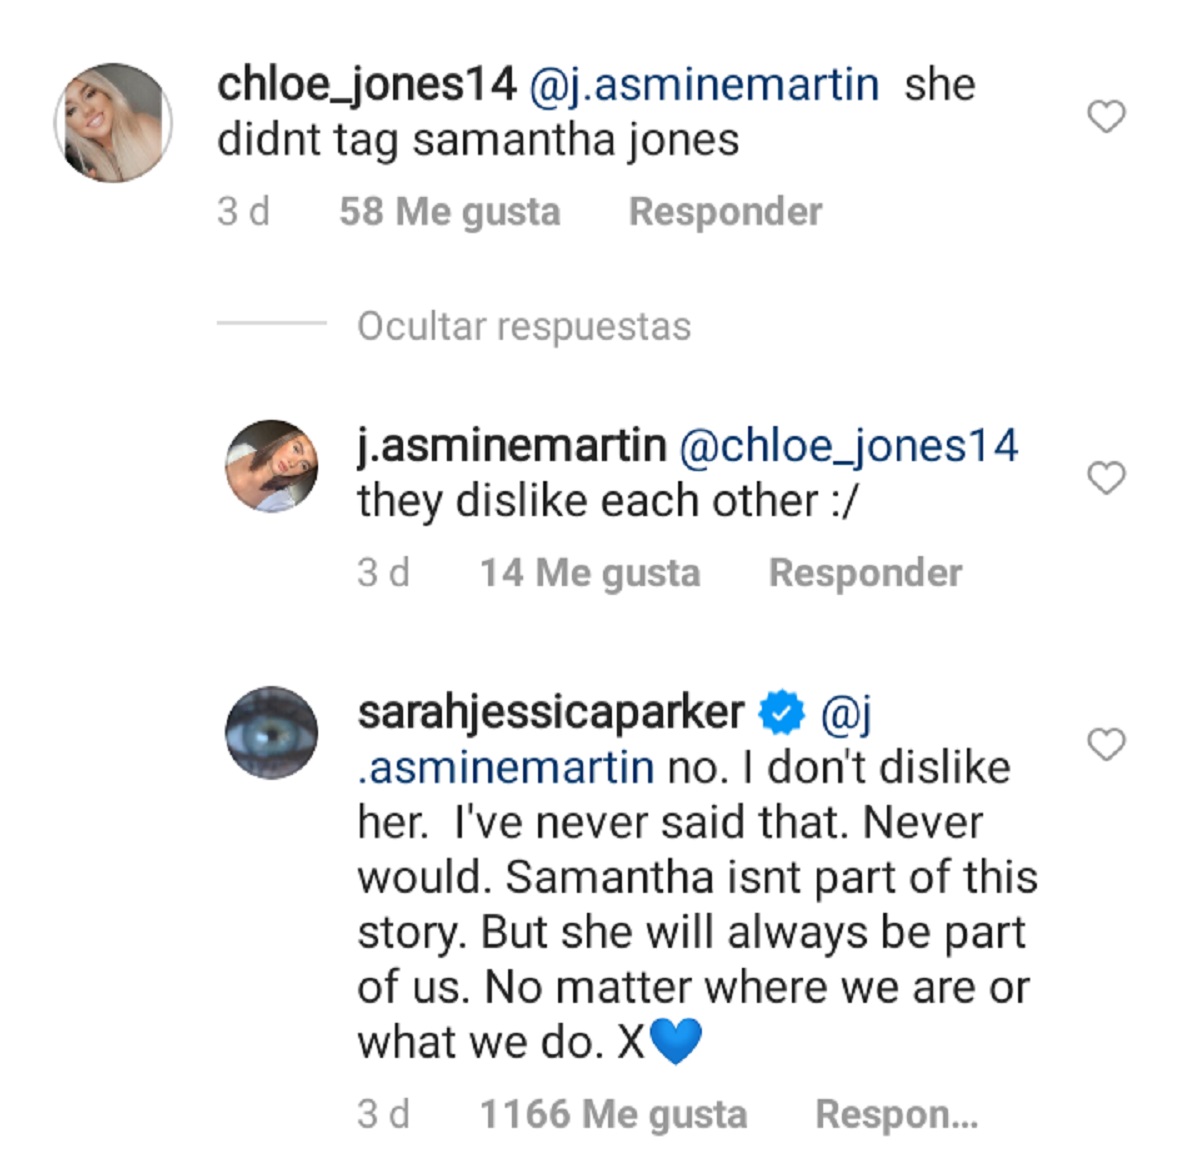 Comentarios en el Instagram de Sarah Jessica Parker